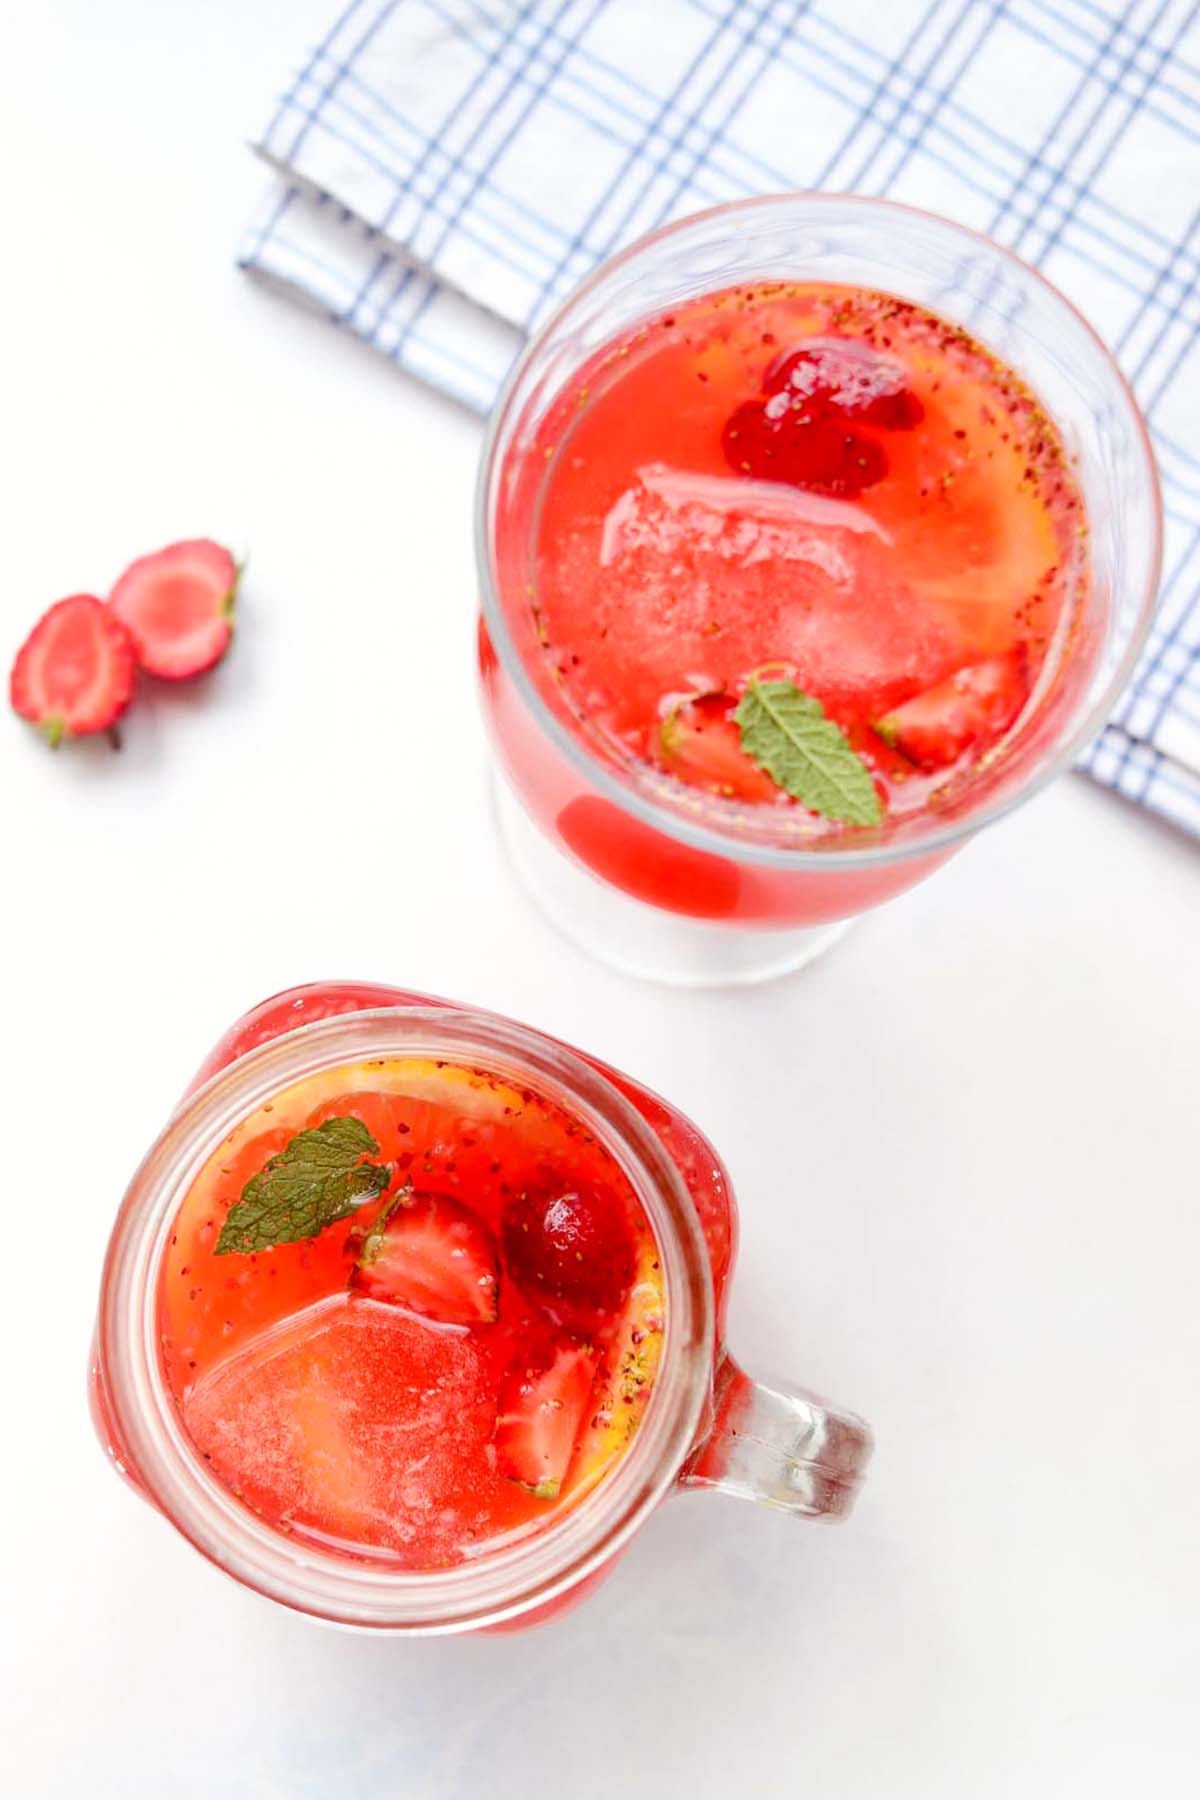 Strawberry lemonade in two glasses.